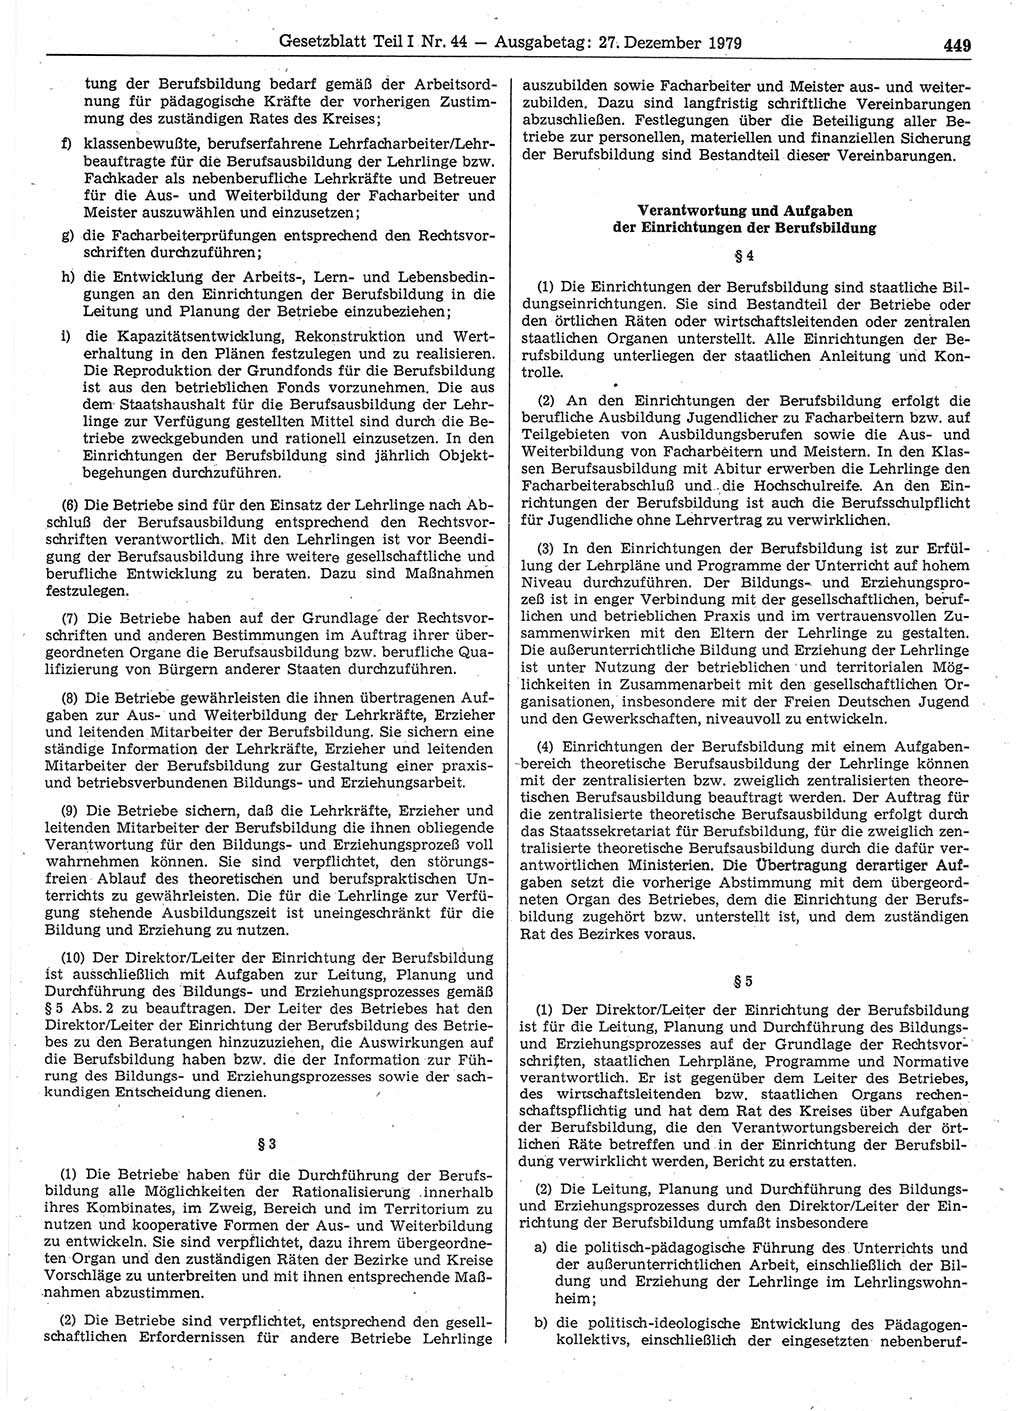 Gesetzblatt (GBl.) der Deutschen Demokratischen Republik (DDR) Teil Ⅰ 1979, Seite 449 (GBl. DDR Ⅰ 1979, S. 449)